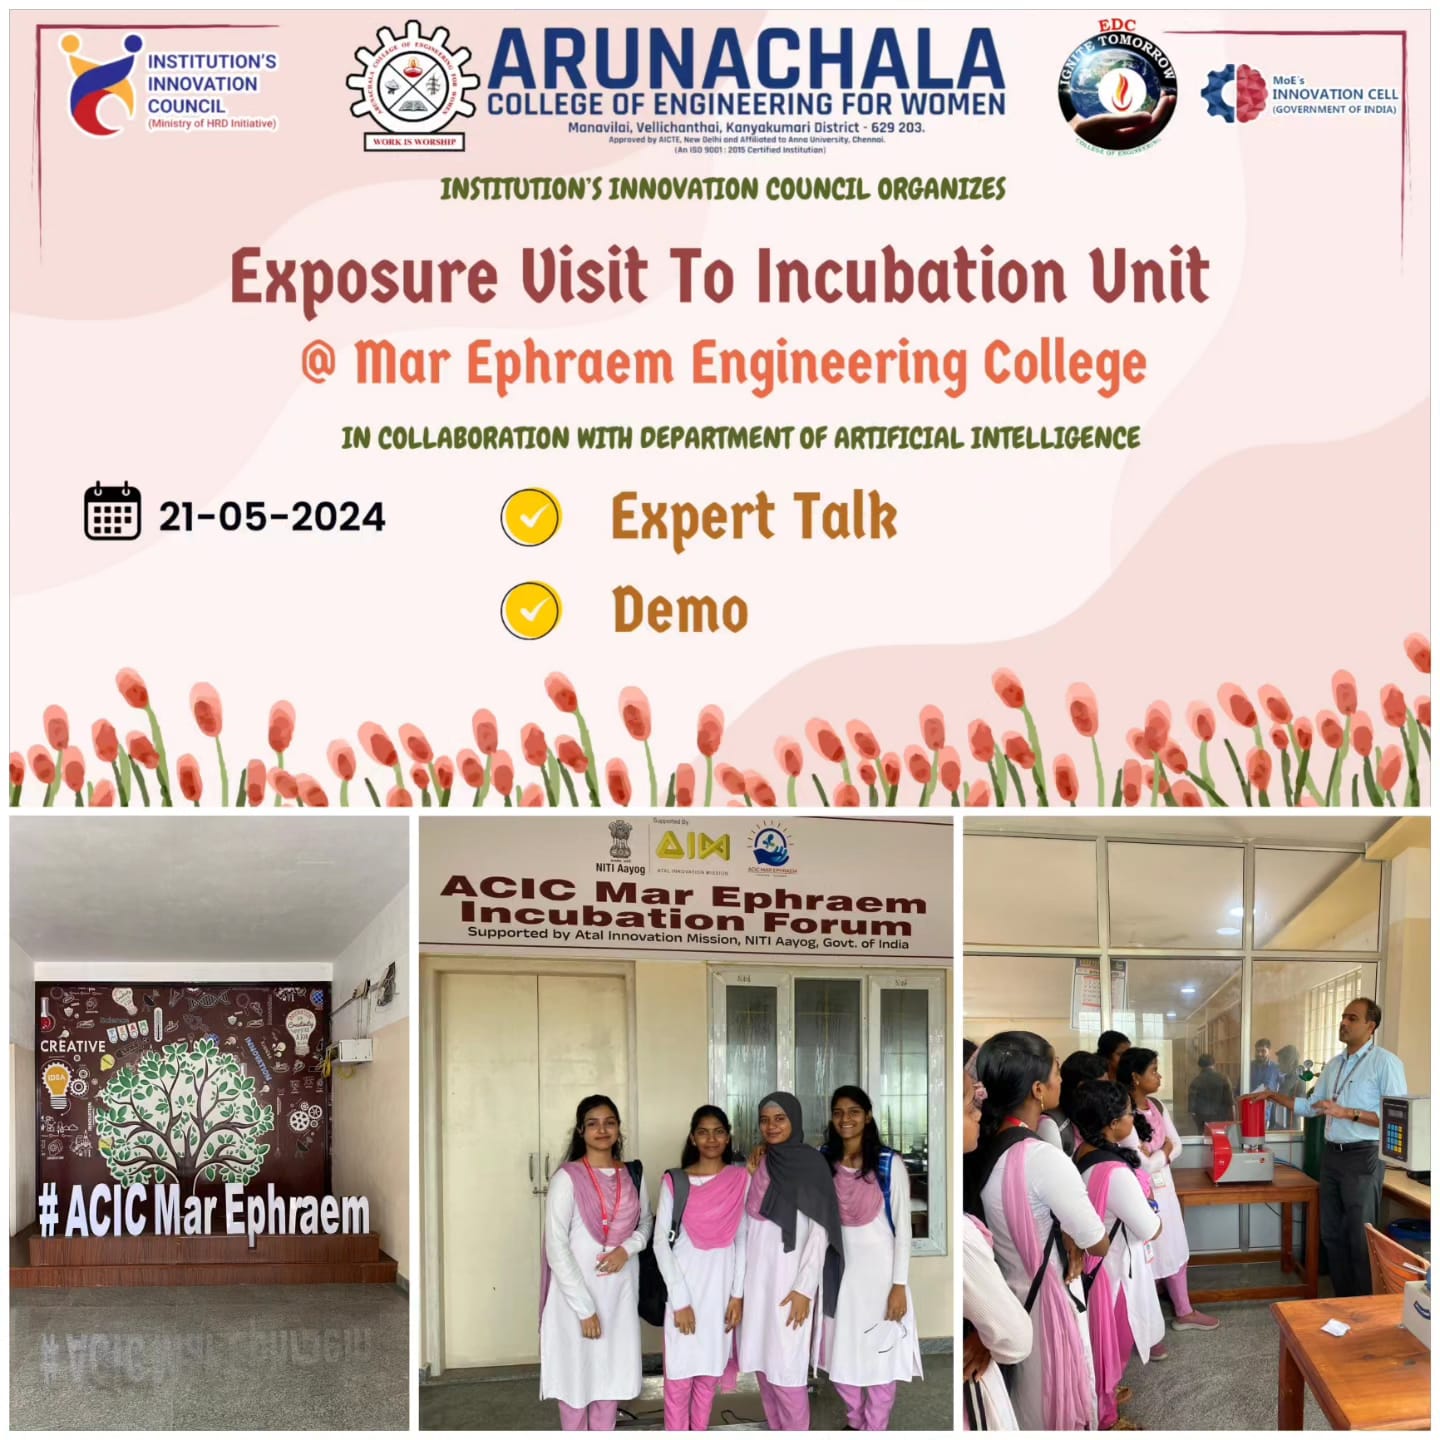 Exposure Visit To Incubation Unit at Mar ephraem 